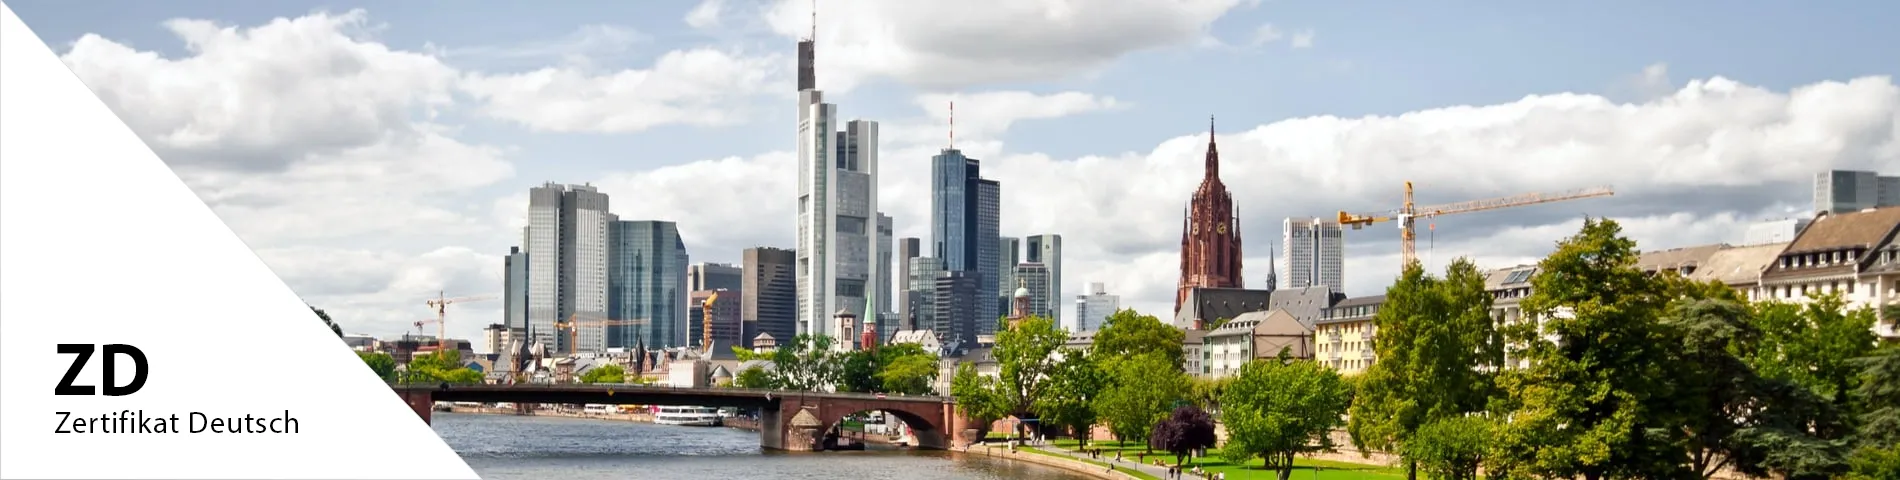 Frankfurt - Zertifikat Deutsch